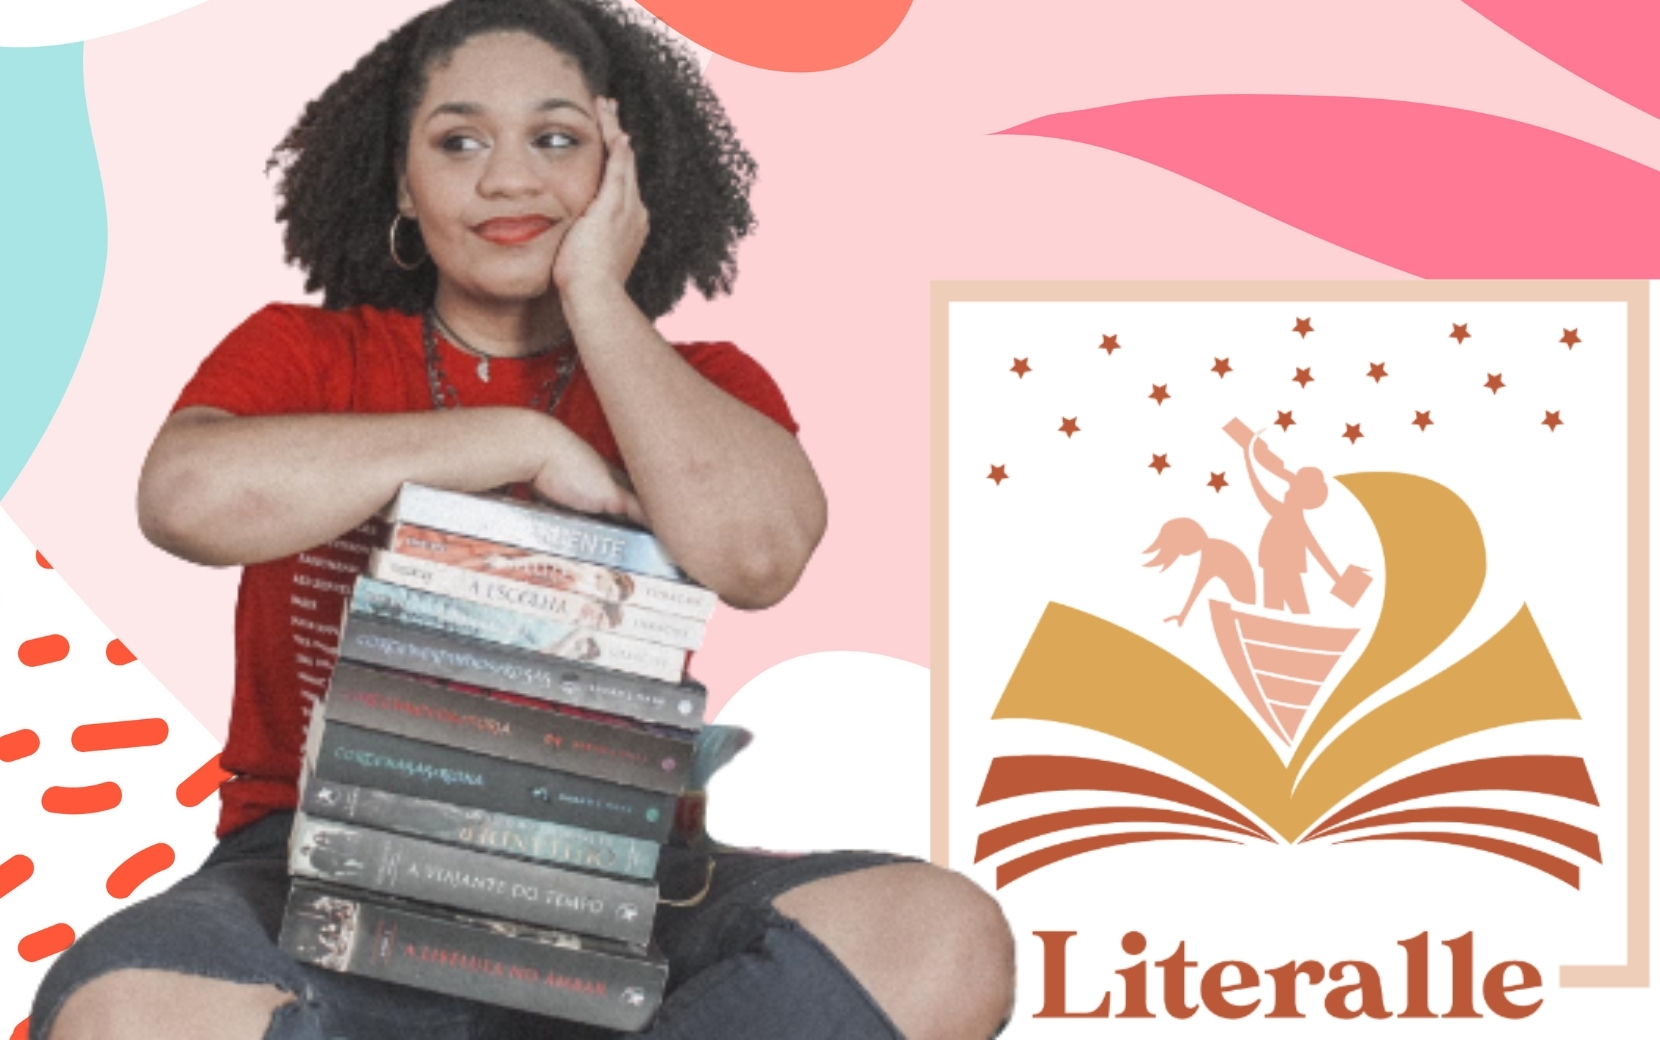 Conheça o "Literalle": programa inédito de entrevistas literárias